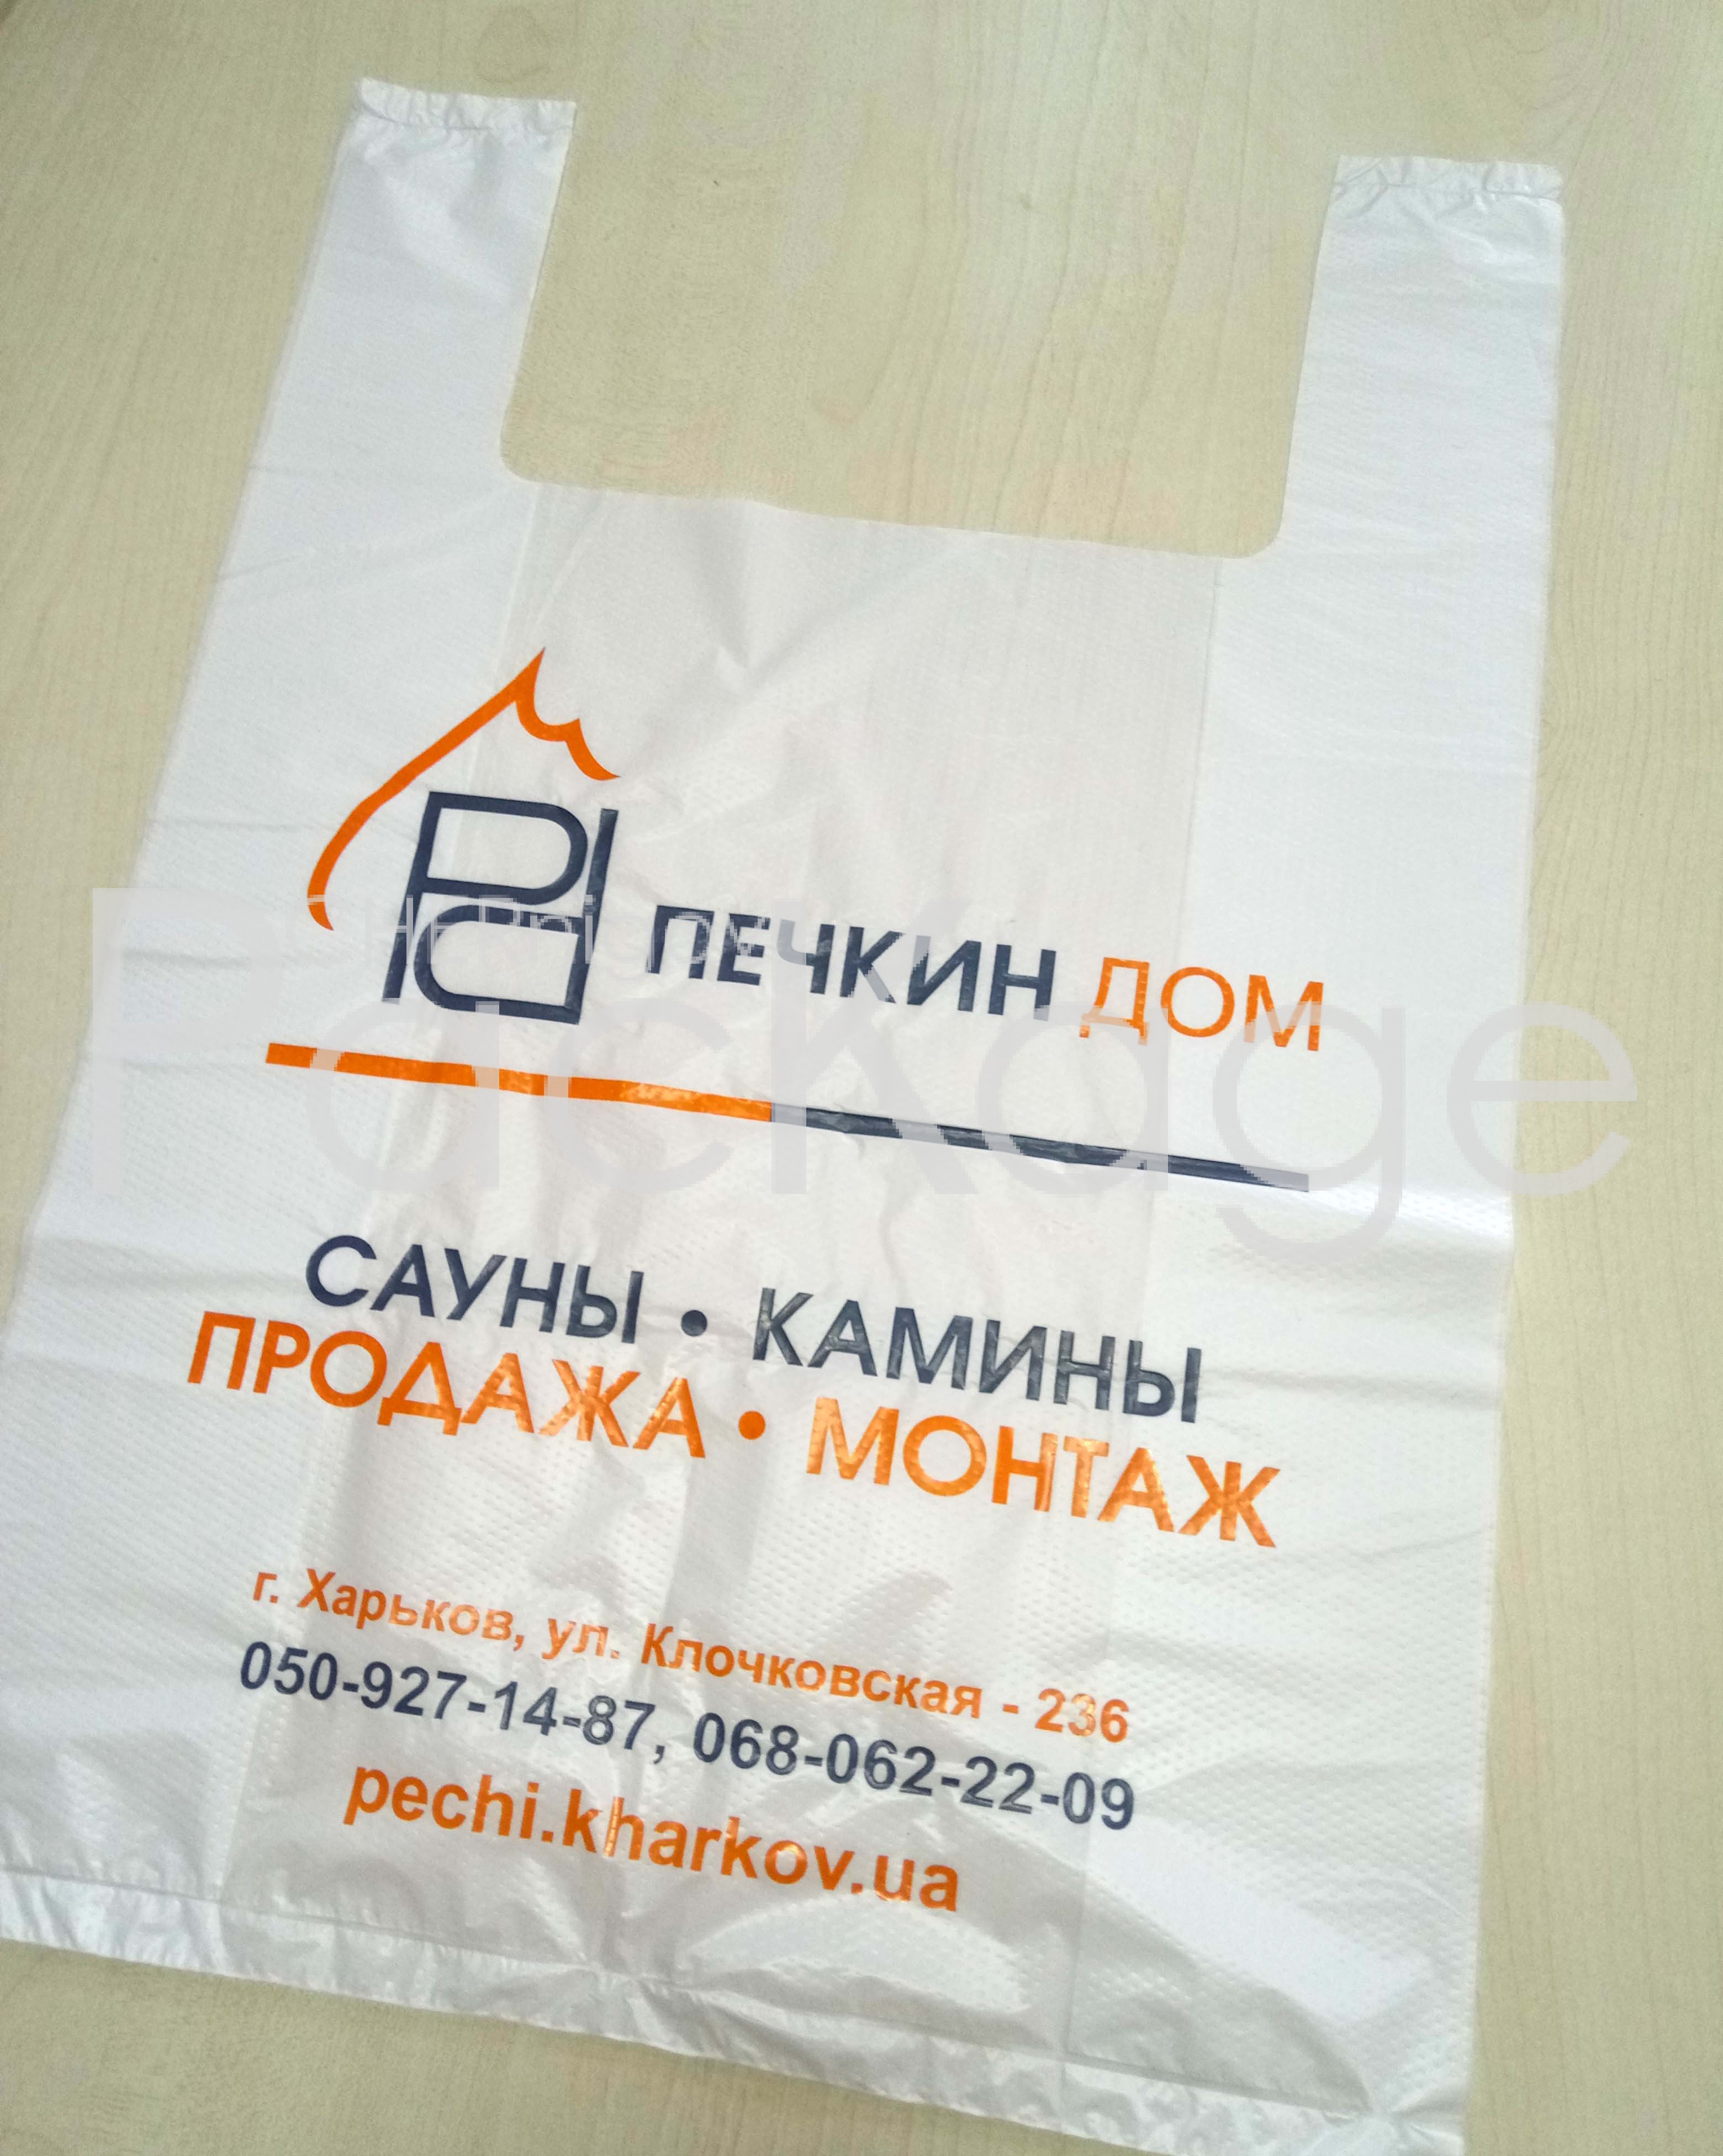 Изготовление упаковки. Полиэтиленовые мешки Chernigov Package - Фото P70310-104429